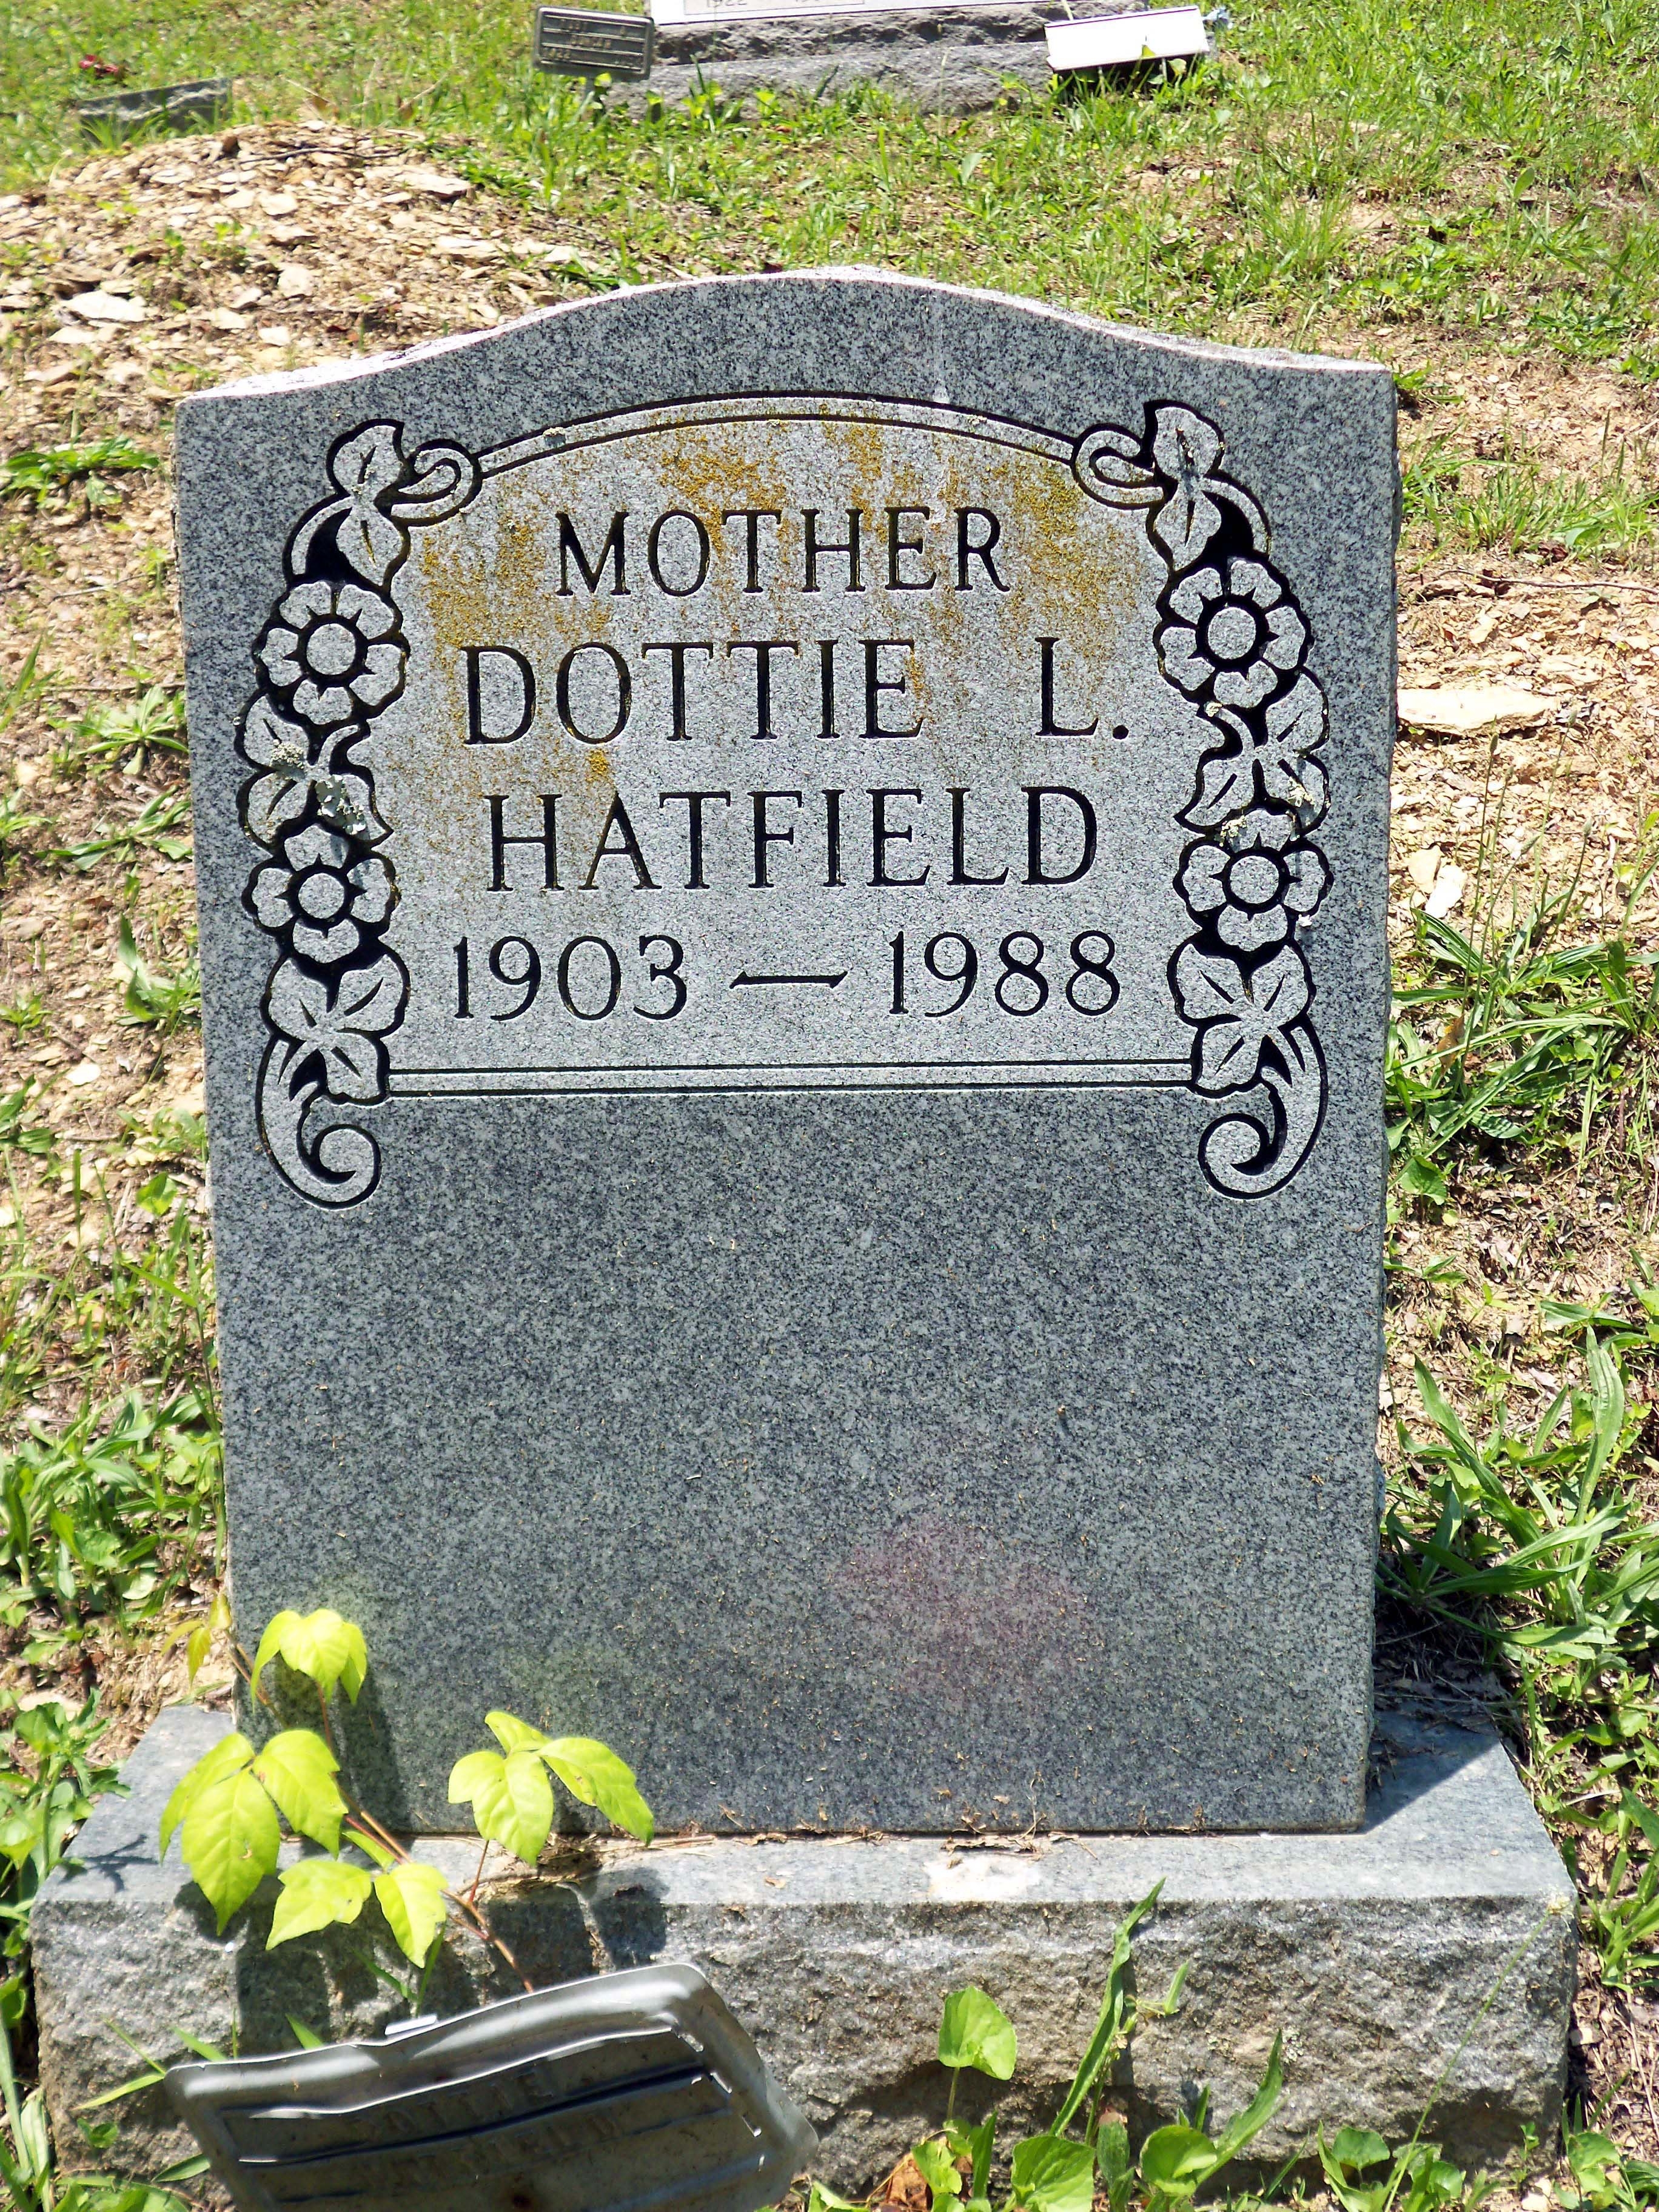 Dottie Lou Cook Hatfield